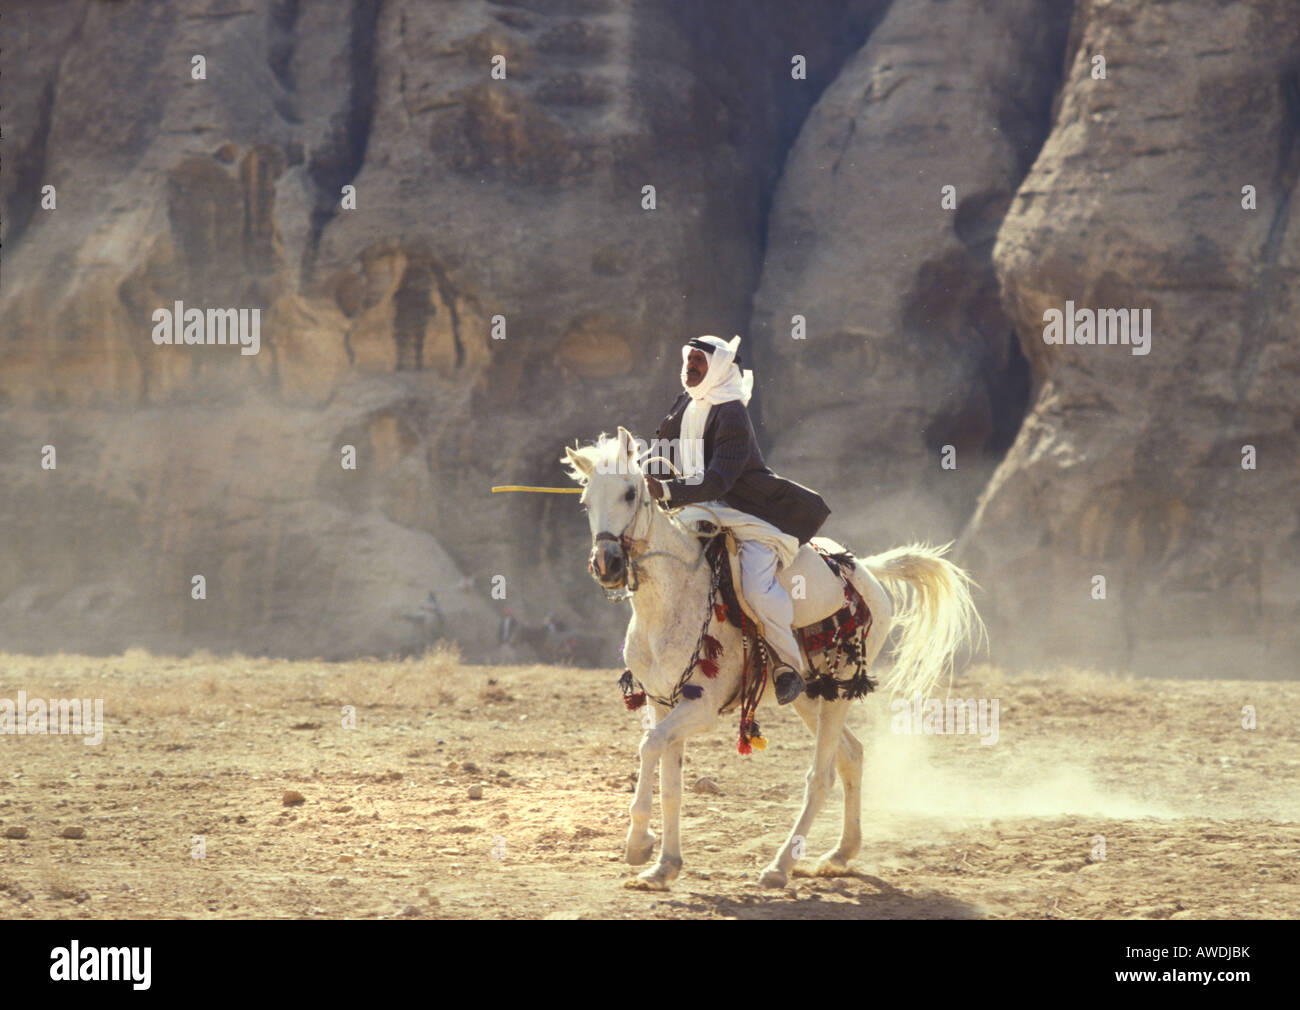 Staub aufwirbeln - ein berittene Araber auf einem weißen Pferd wartet auf einen Pferderennen in der Wüste, in der Nähe von Petra, Jordanien Stockfoto